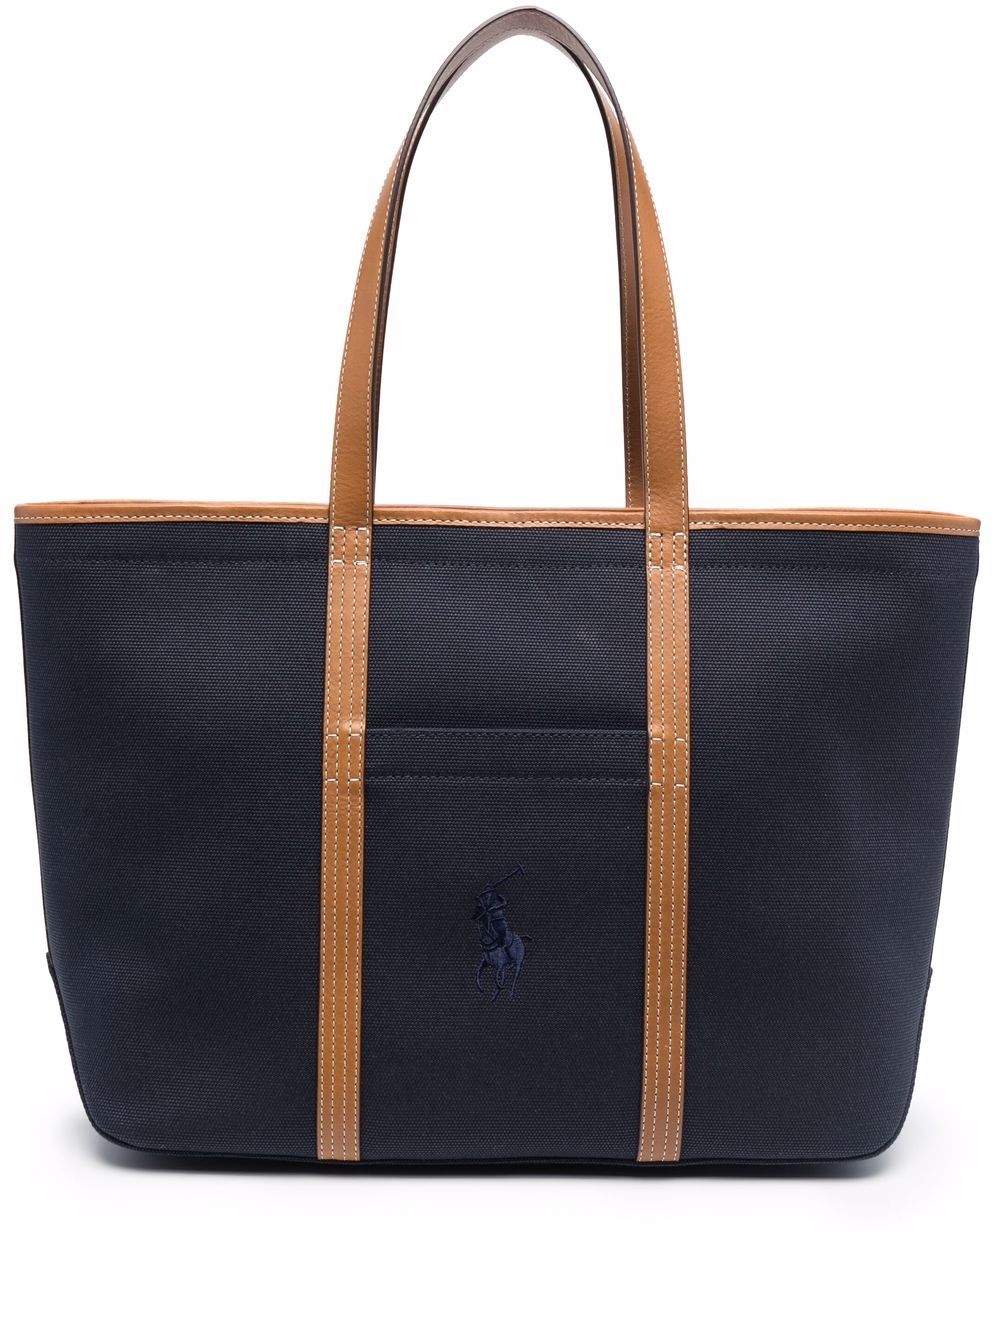 фото Polo ralph lauren сумка-тоут с вышитым логотипом